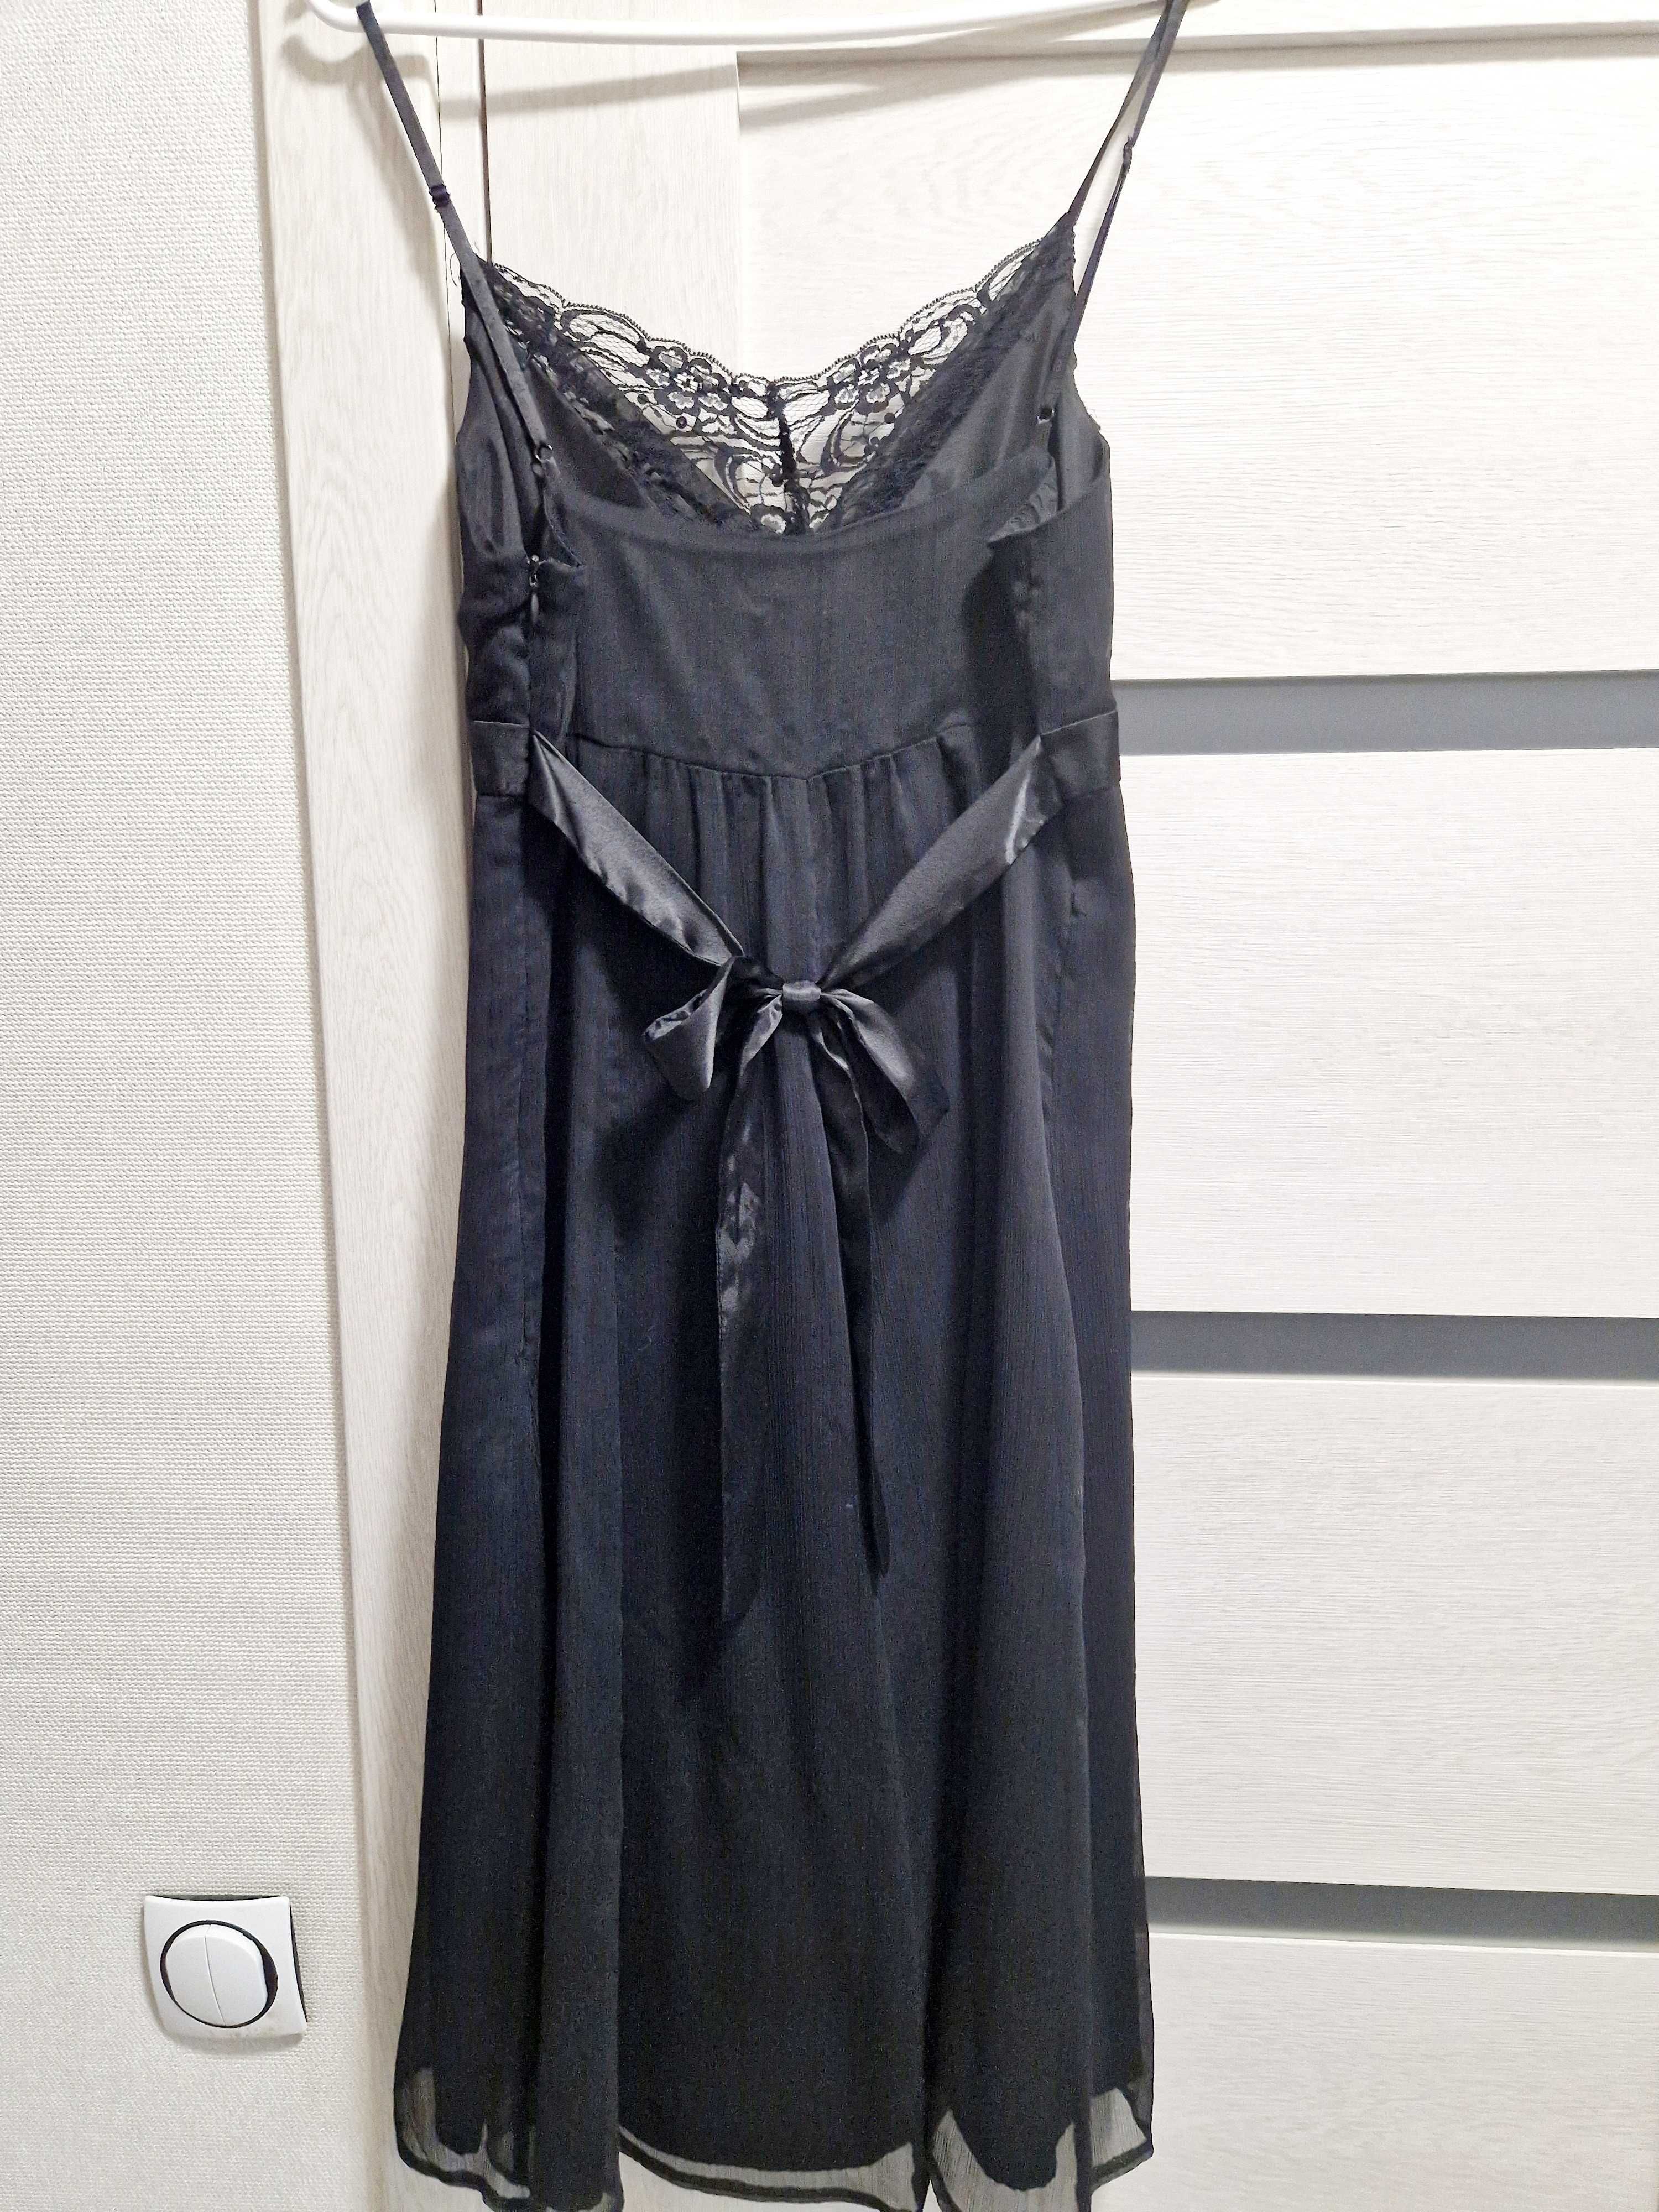 Розпродаж! Нарядна сукня за 350 грн!